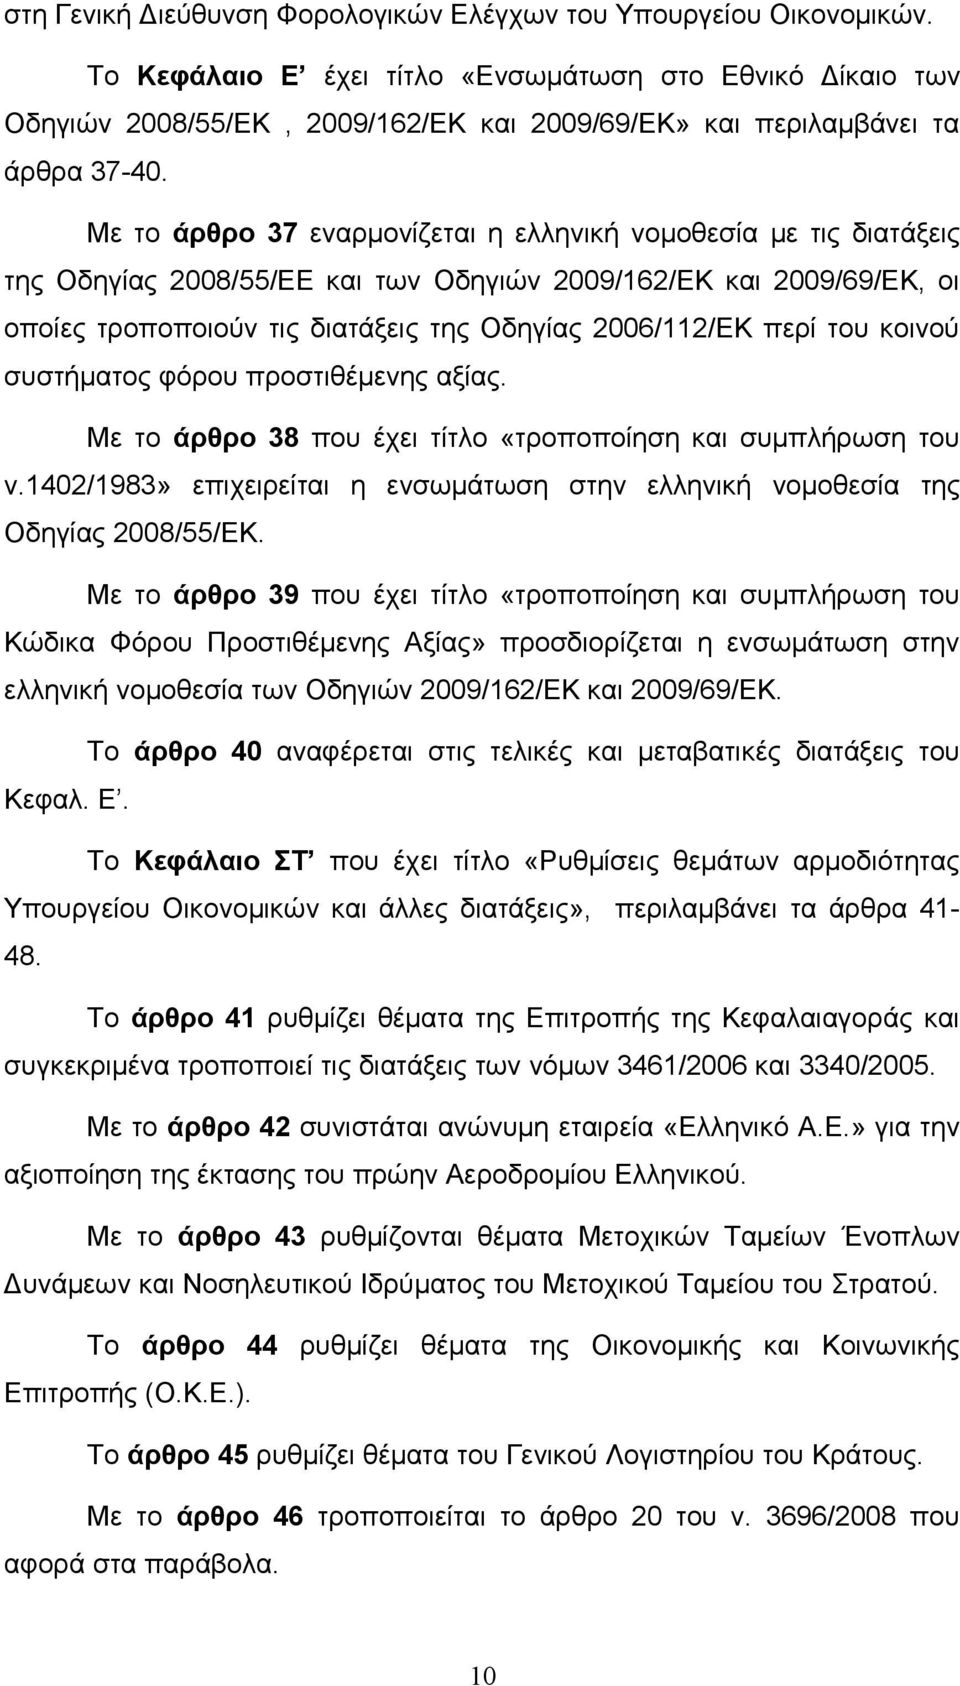 Με το άρθρο 37 εναρμονίζεται η ελληνική νομοθεσία με τις διατάξεις της Οδηγίας 2008/55/ΕΕ και των Οδηγιών 2009/162/ΕΚ και 2009/69/ΕΚ, οι οποίες τροποποιούν τις διατάξεις της Οδηγίας 2006/112/ΕΚ περί